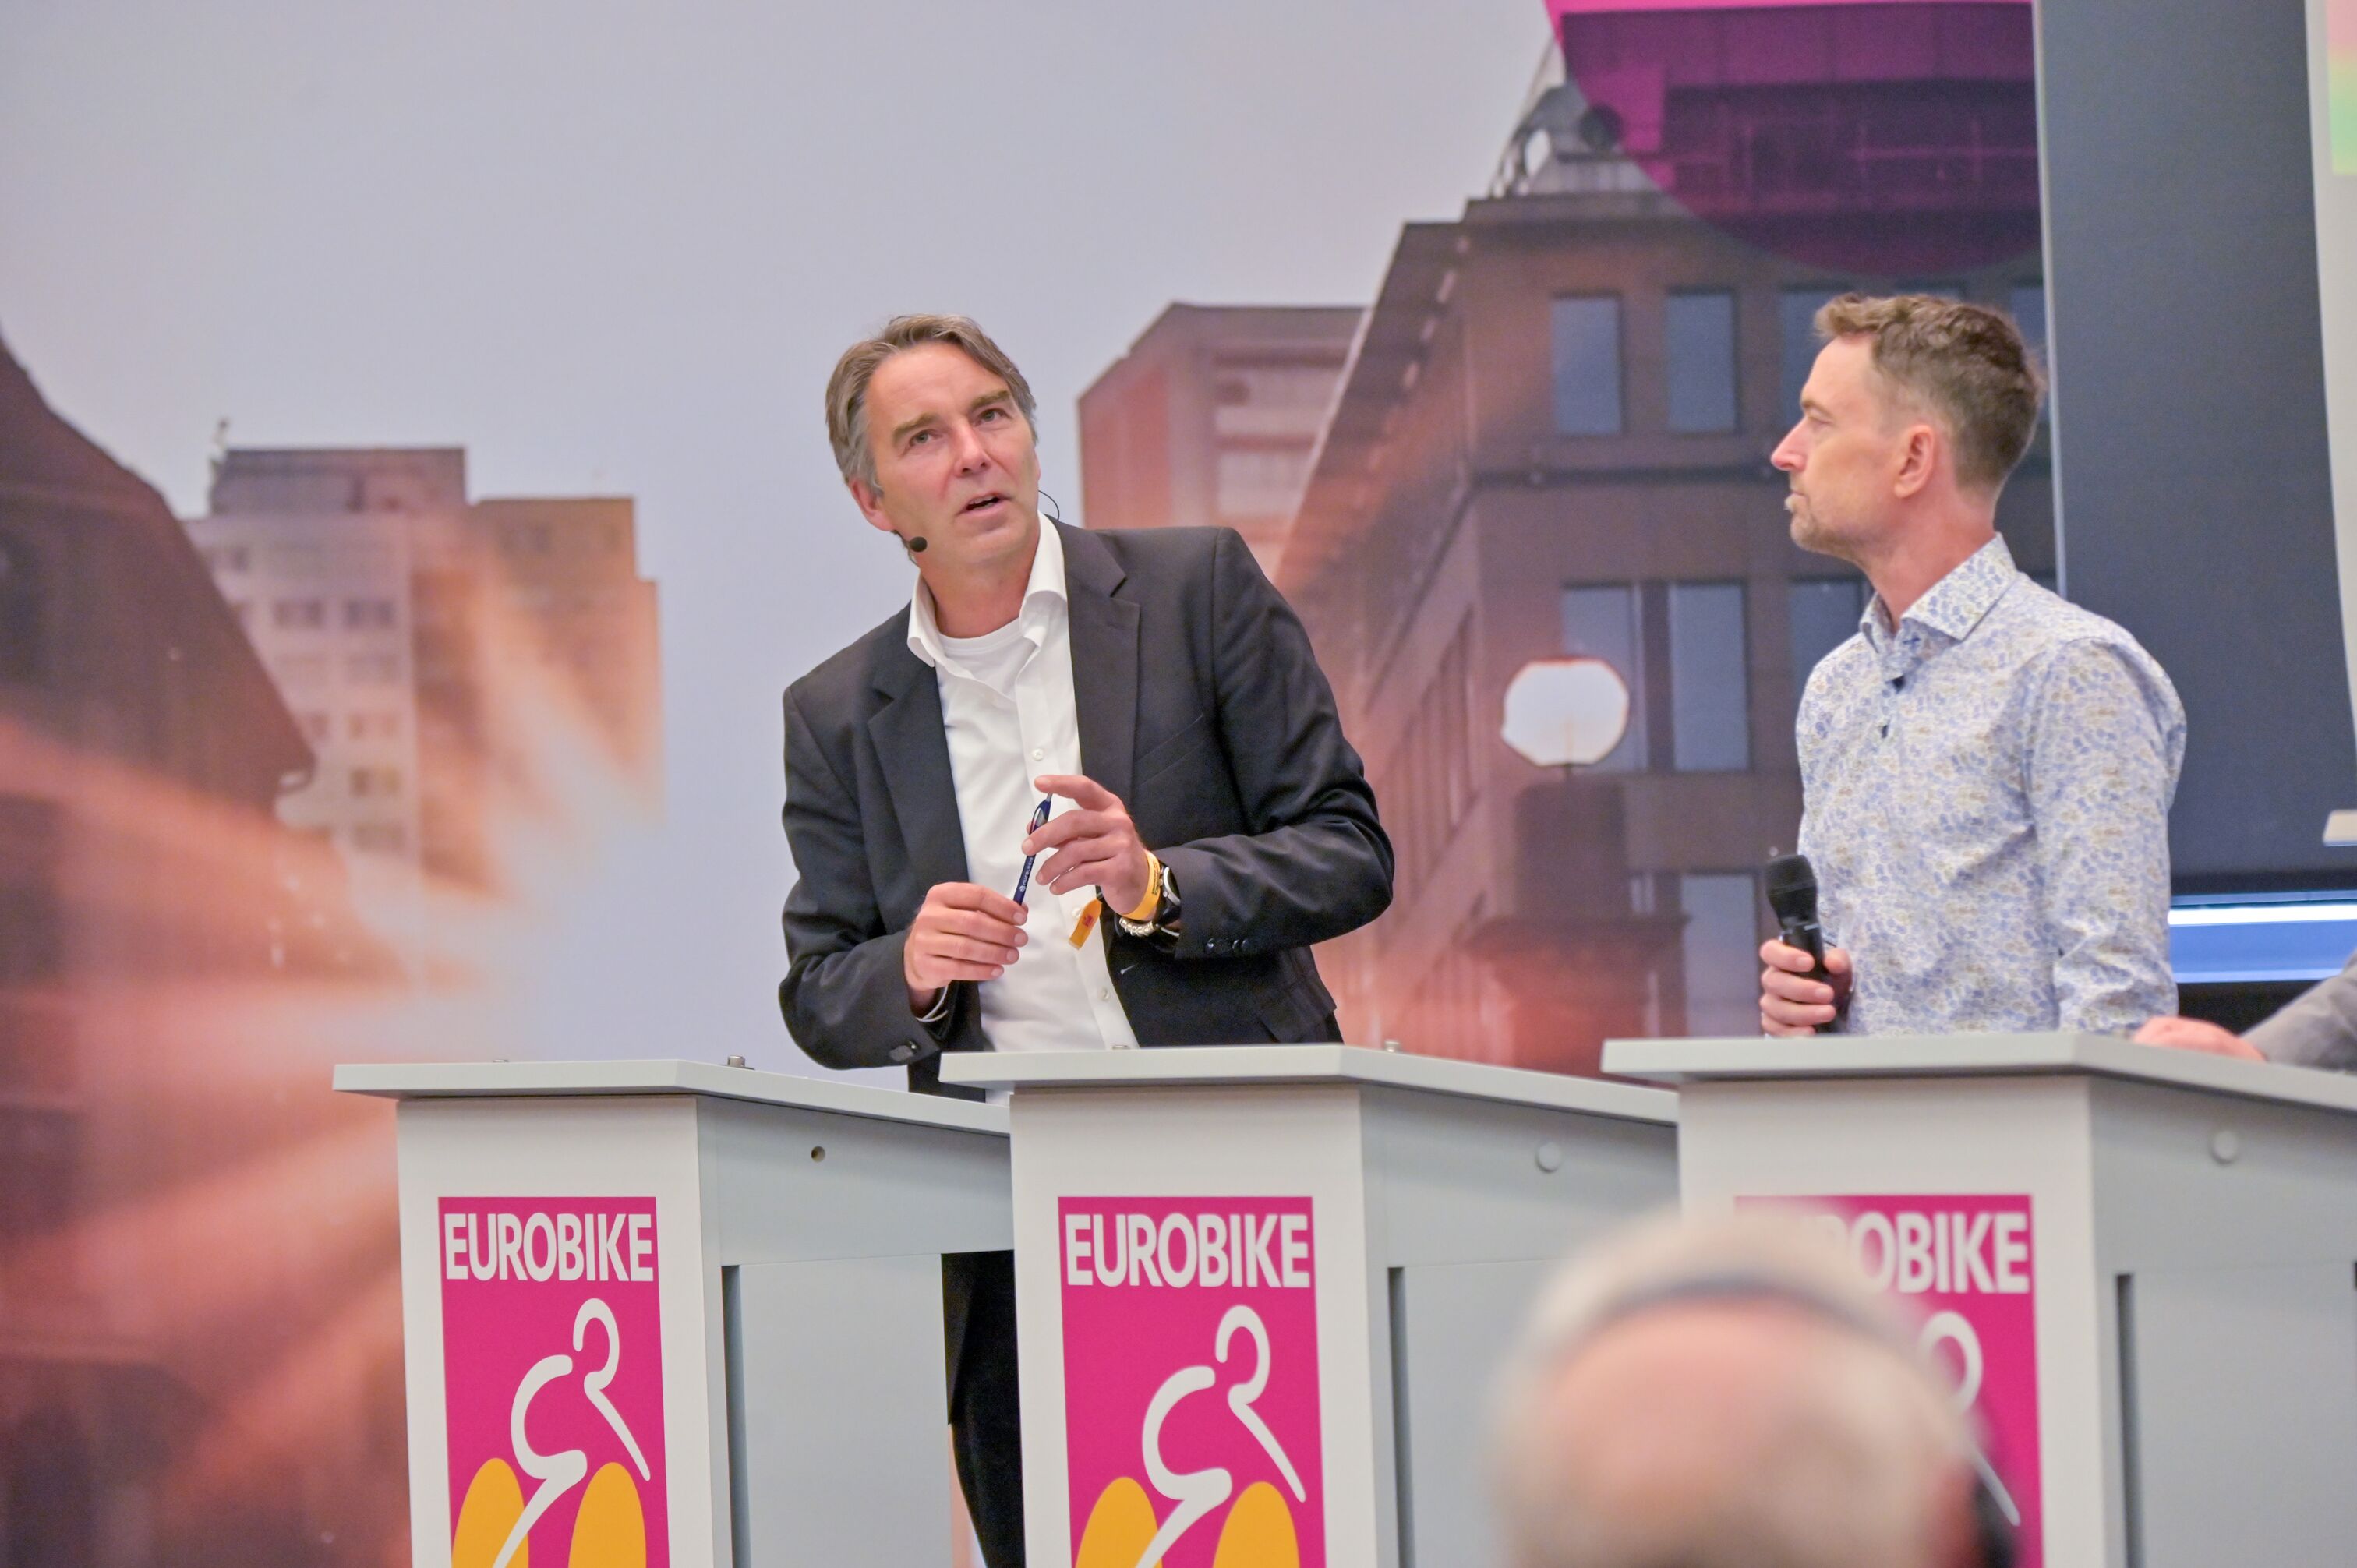 Eurobike-Wirtschaftspressekonferenz: Moderator Frank Puscher im Gespräch mit Stefan Reisinger, Geschäftsführer des Eurobike-Veranstalters fairnamic GmbH